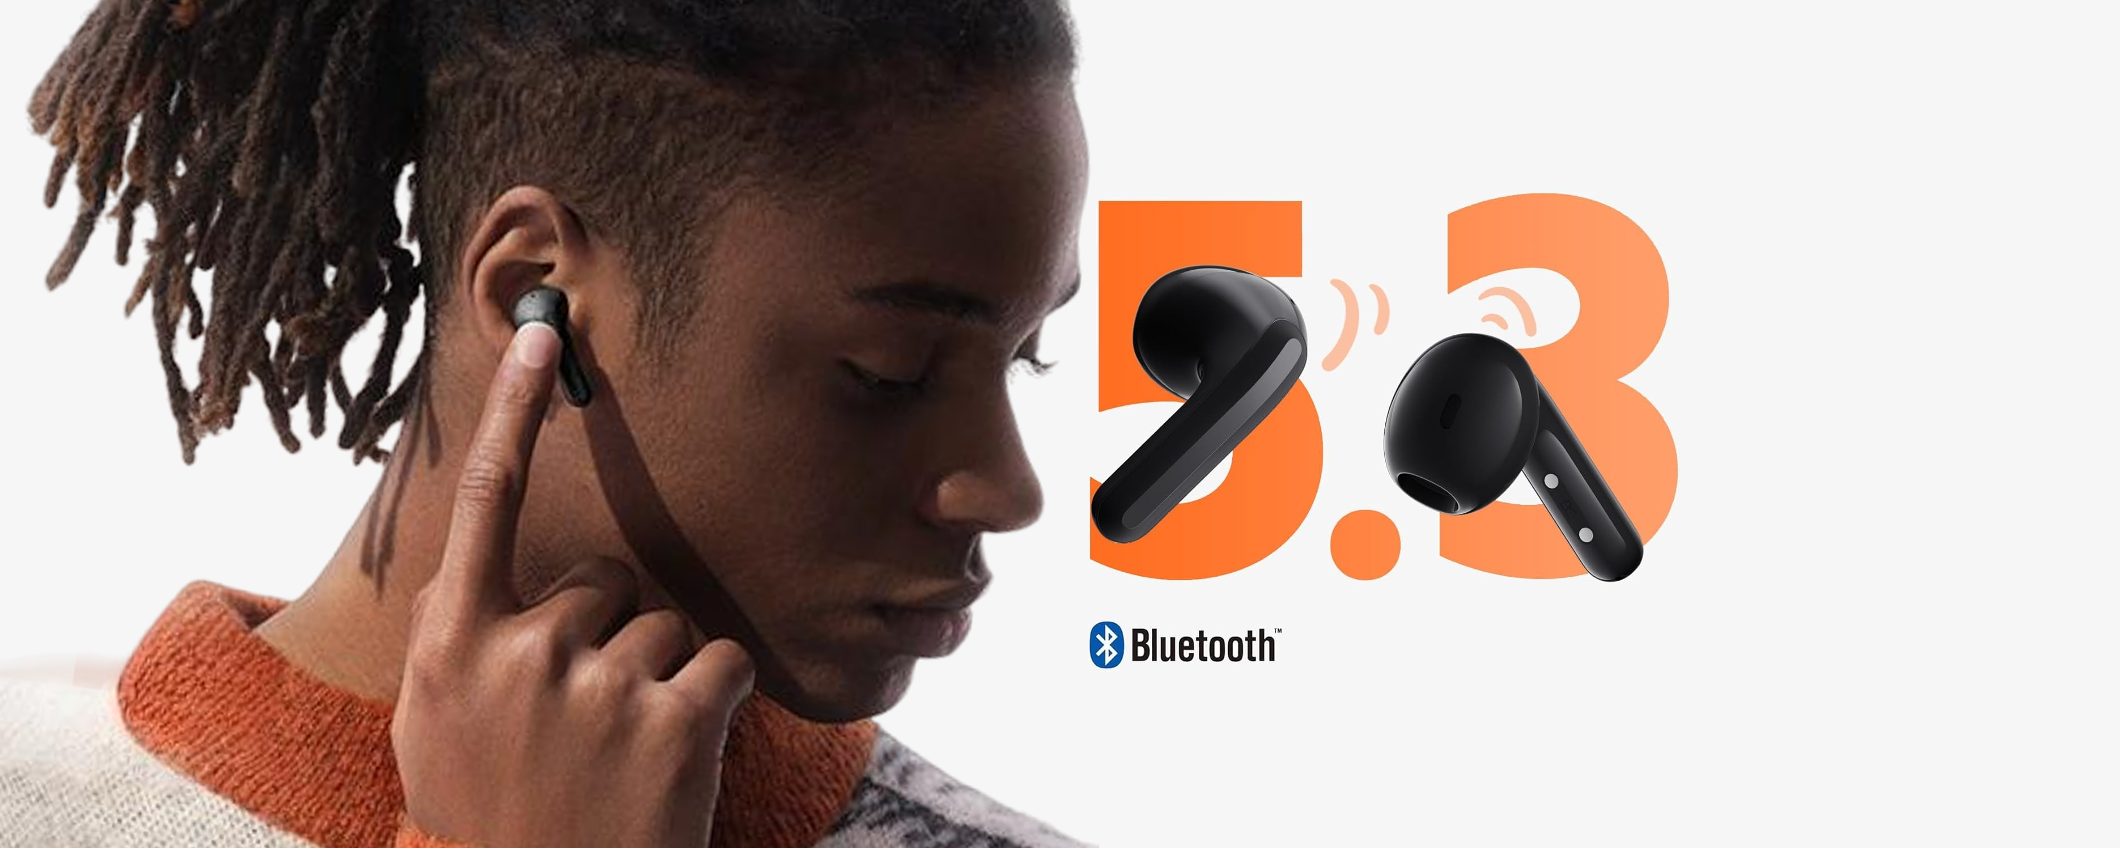 Auricolari Xiaomi a soli 17€: POTENZA sonora che ti stupirà (-51%)